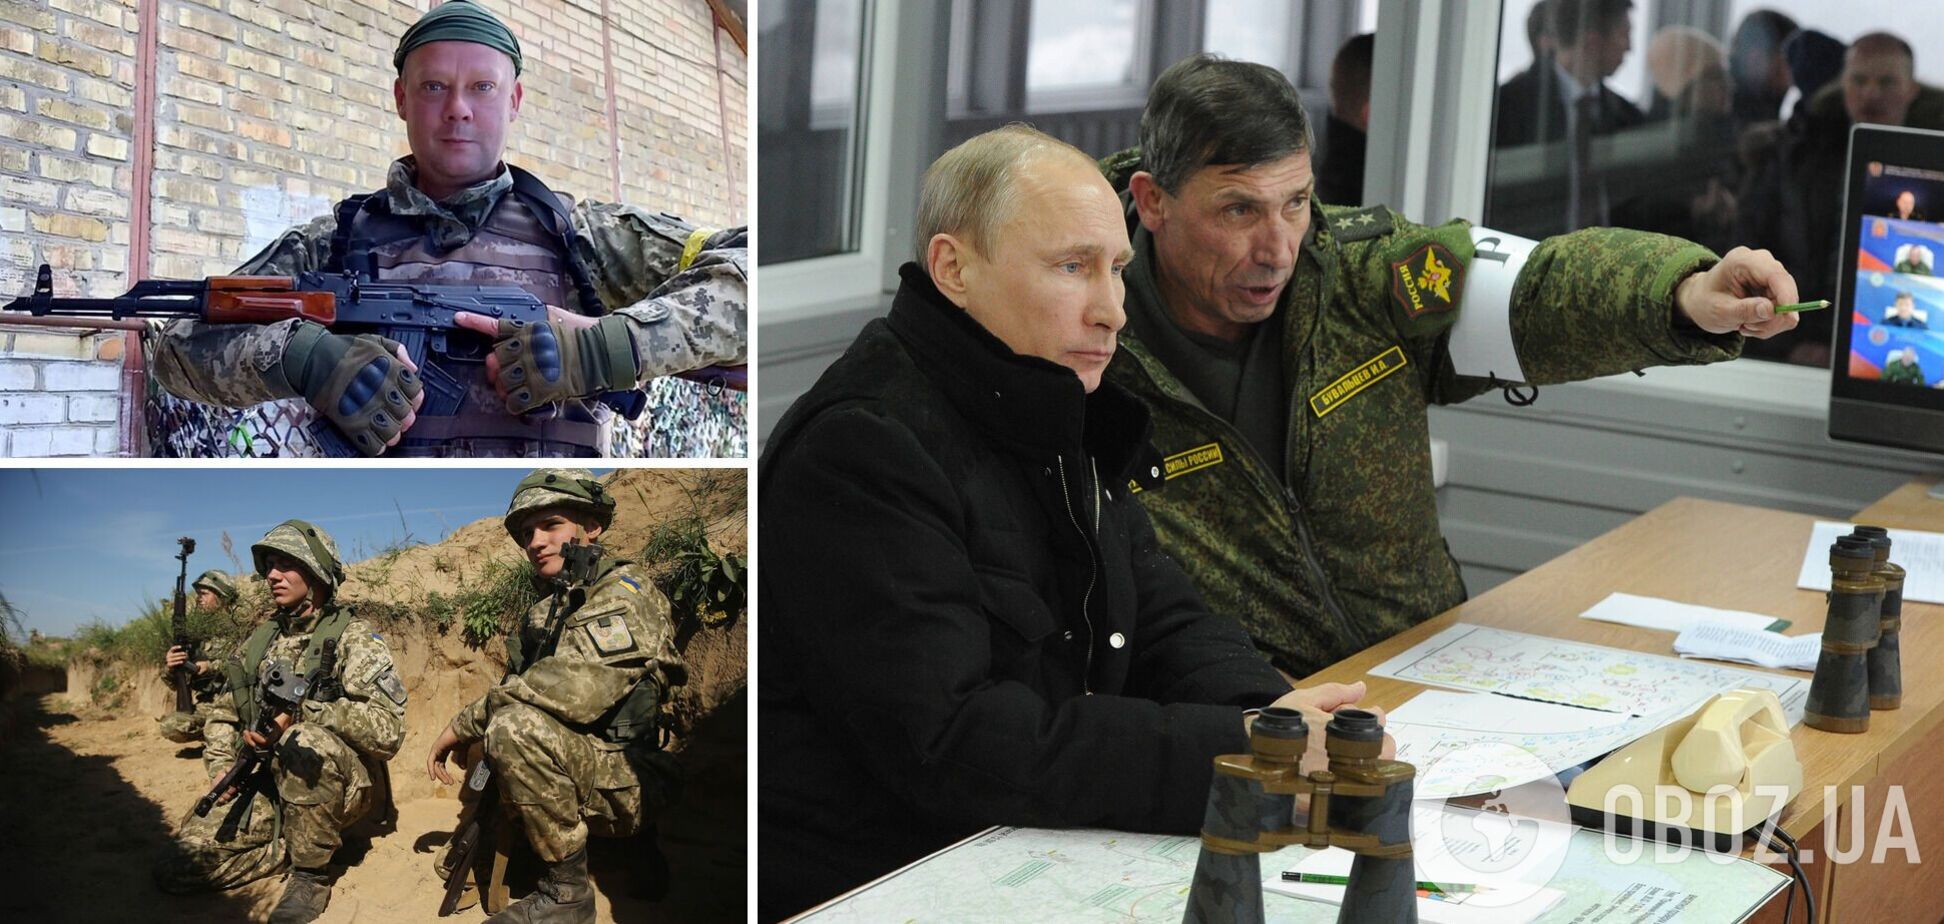 Сазонов: Путин готов пойти на новую глупость, но ВСУ уже превзошли его армию. Интервью